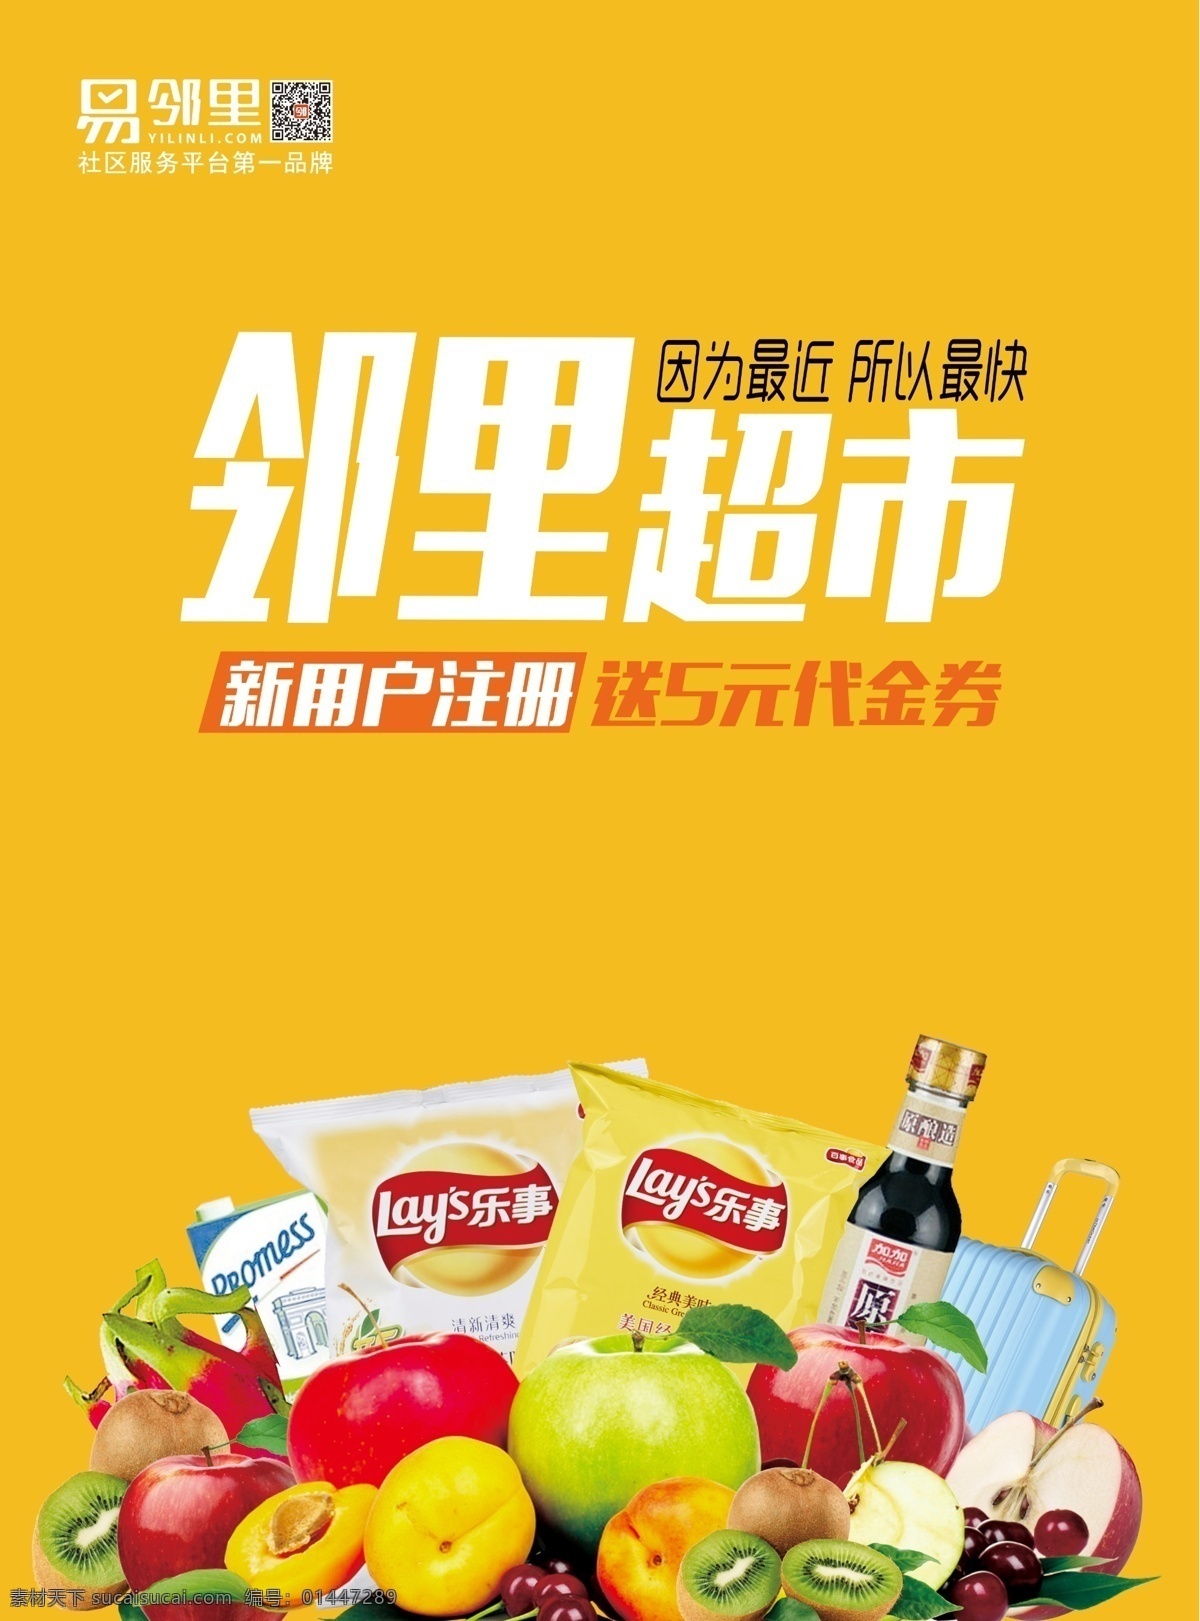 水果 活动 彩页 商城 宣传 超市 黄色